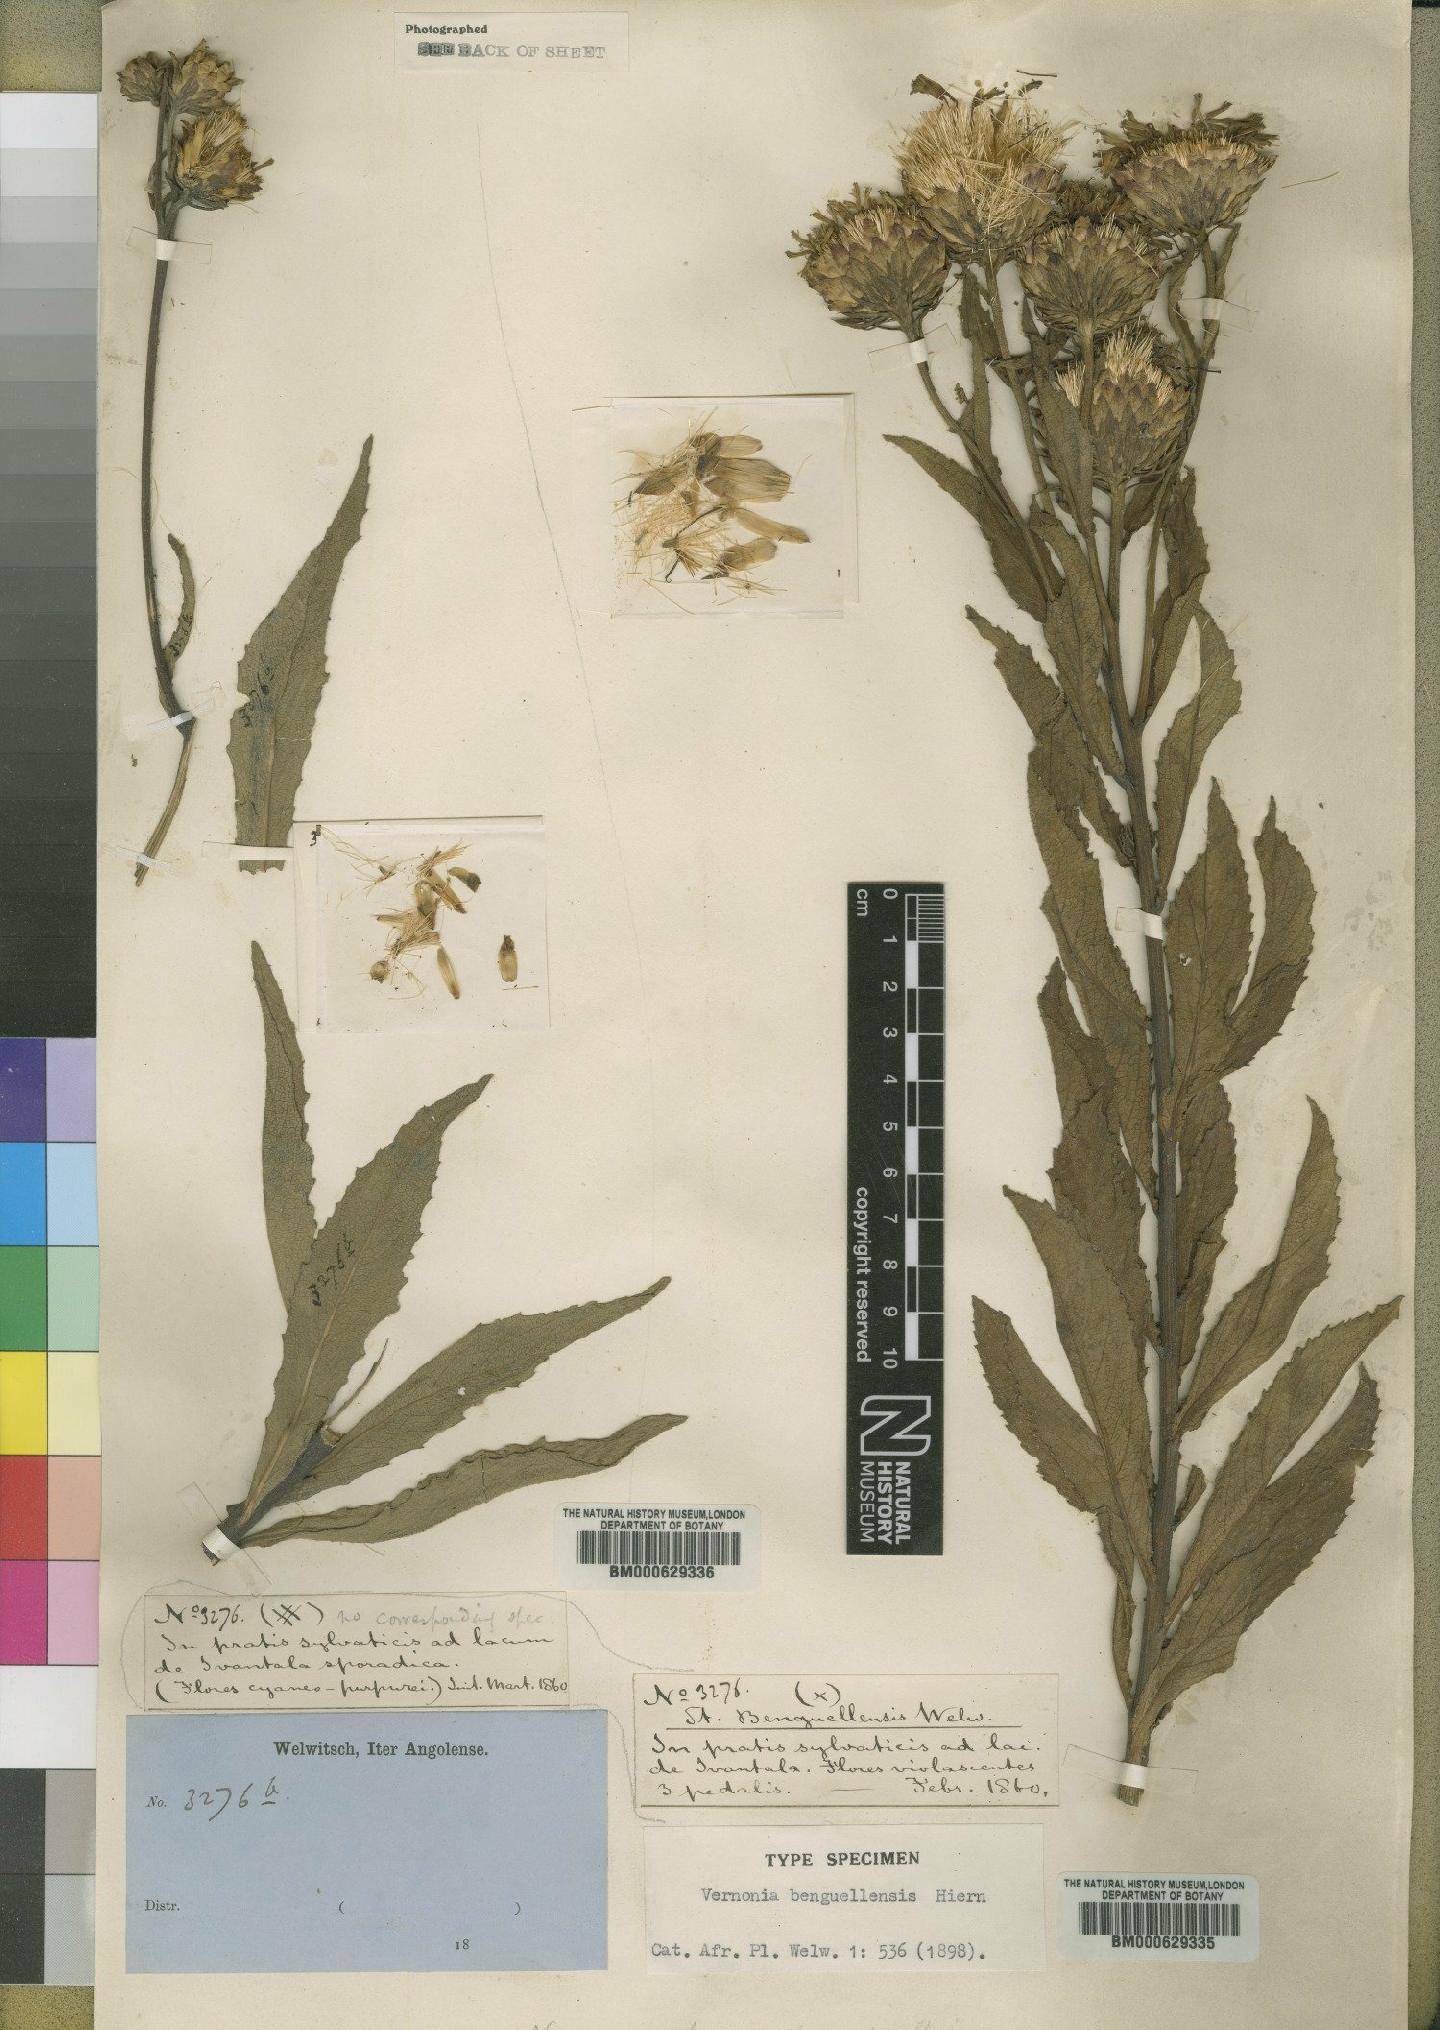 To NHMUK collection (Vernonia benguellensis Hiern; Syntype; NHMUK:ecatalogue:4528569)